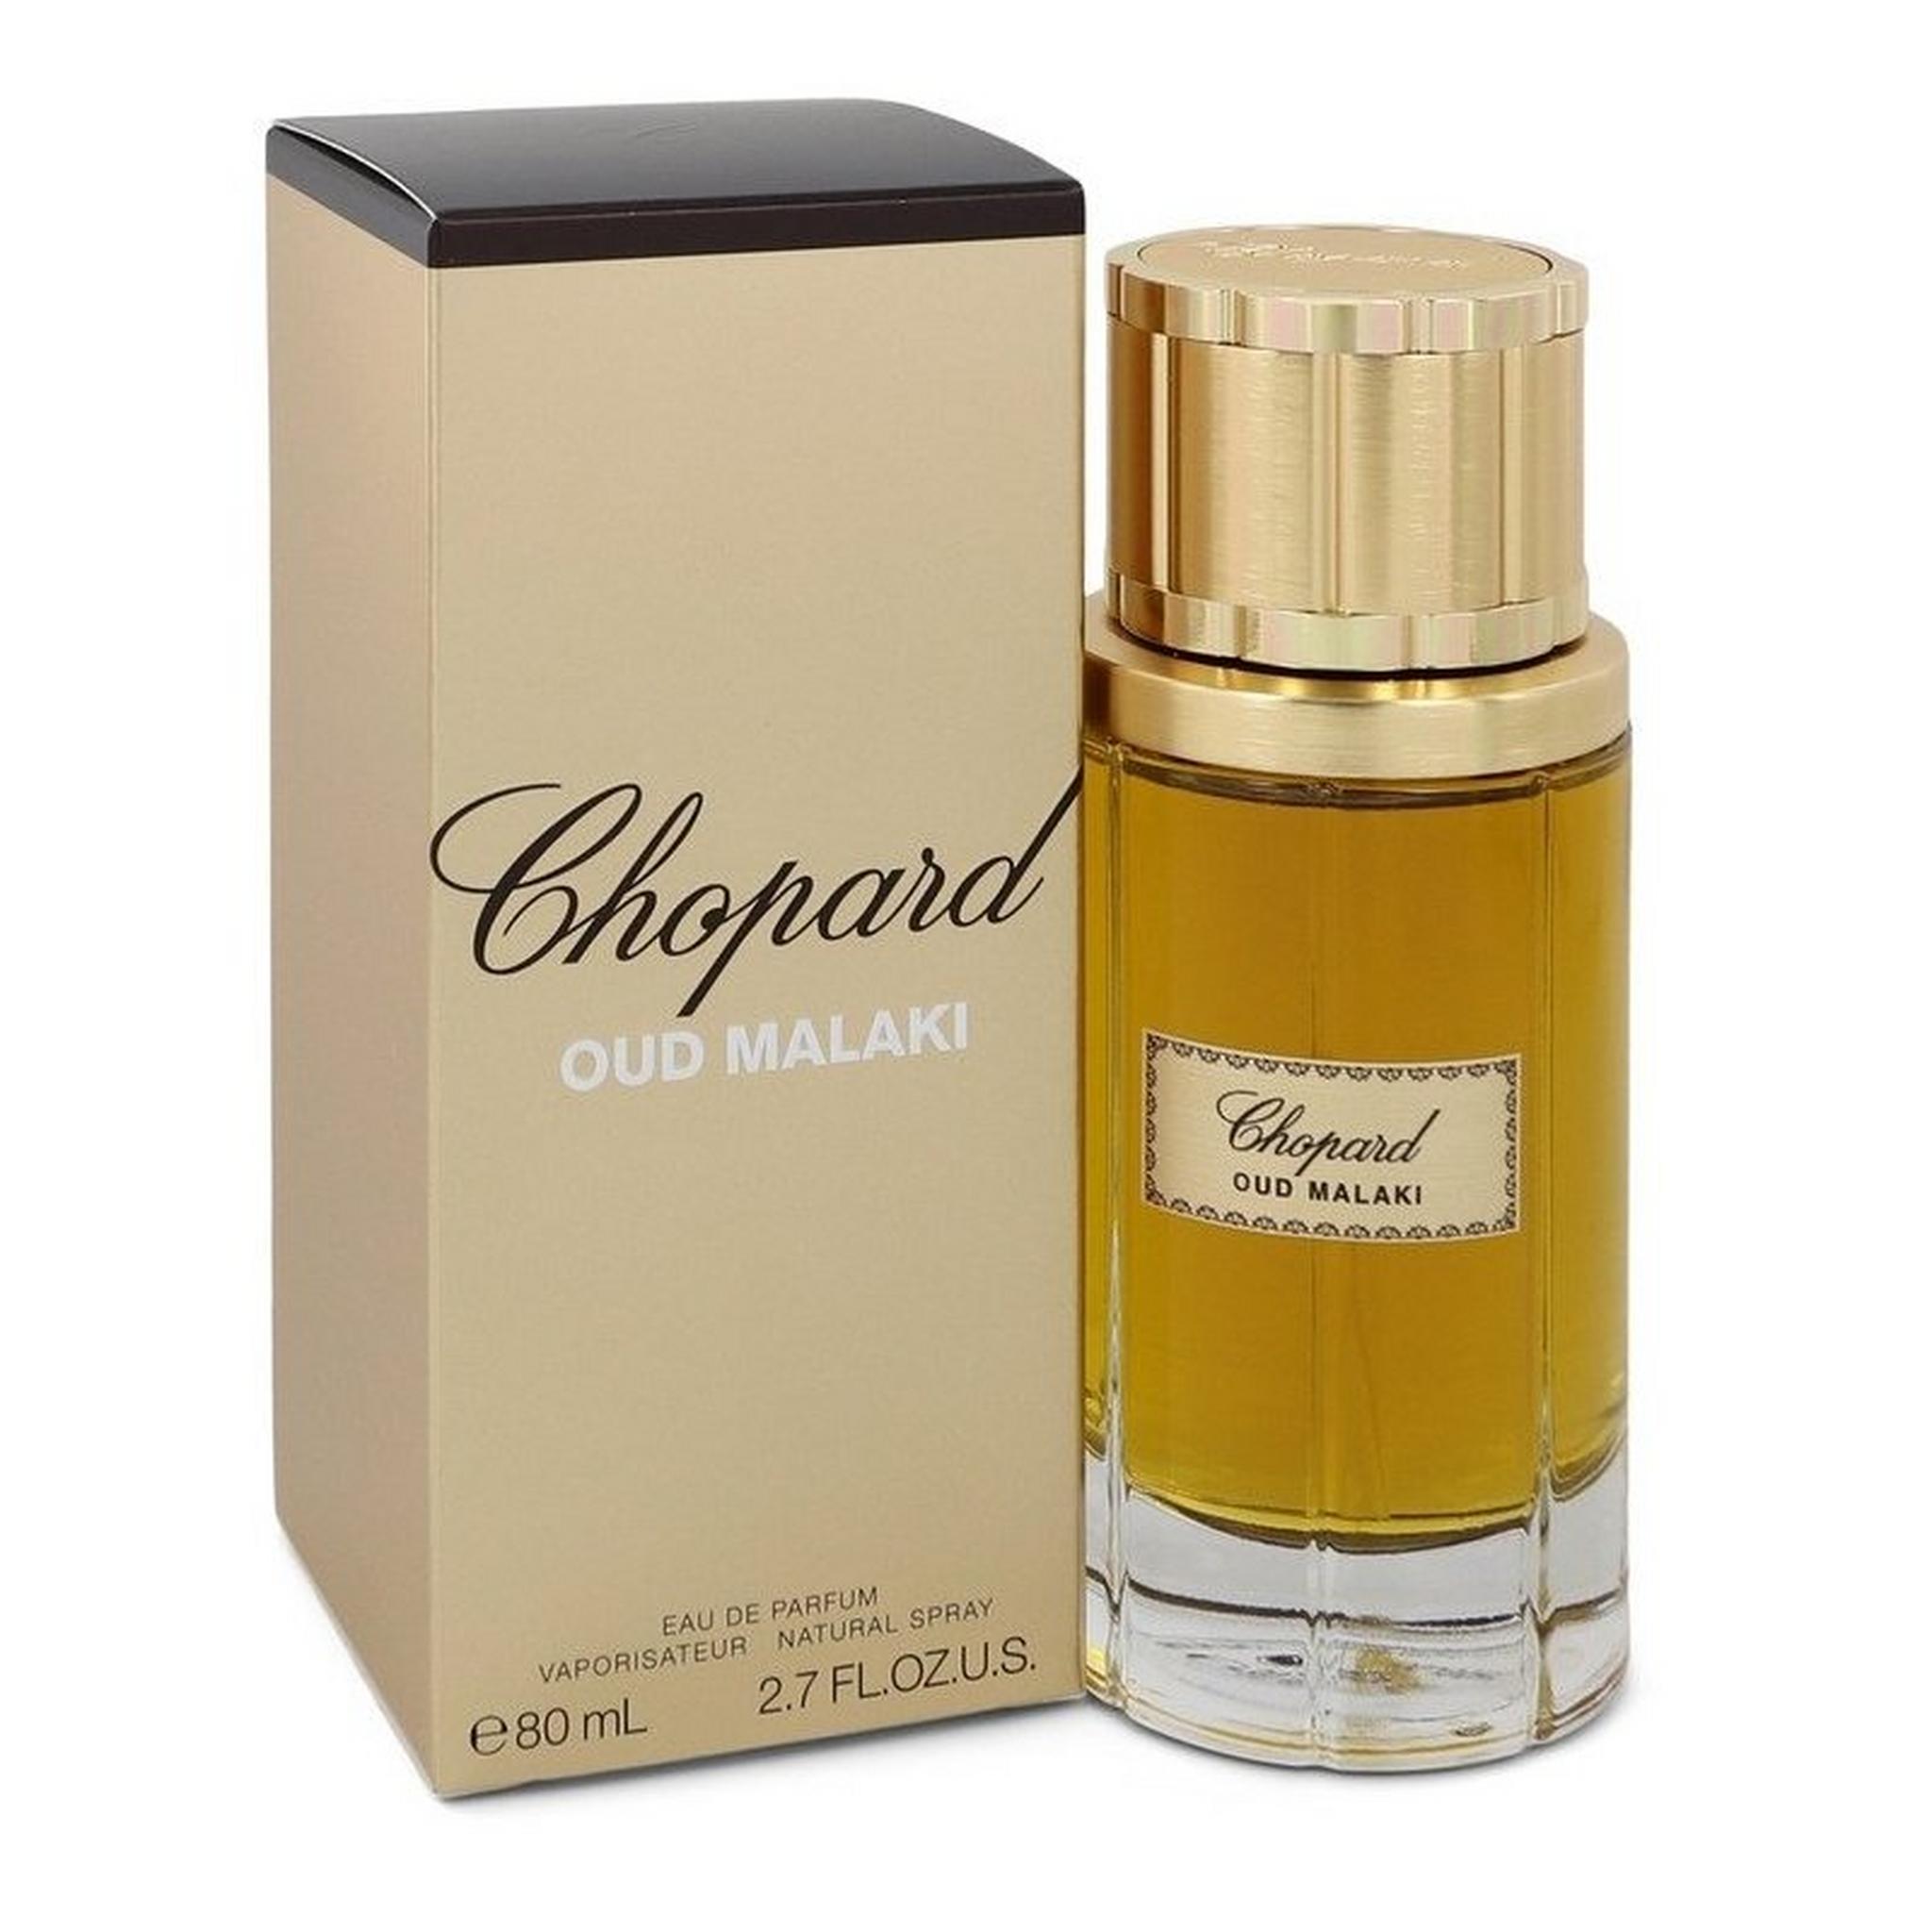 Chopard Oud Malaki EDP for Men 80ml Perfume